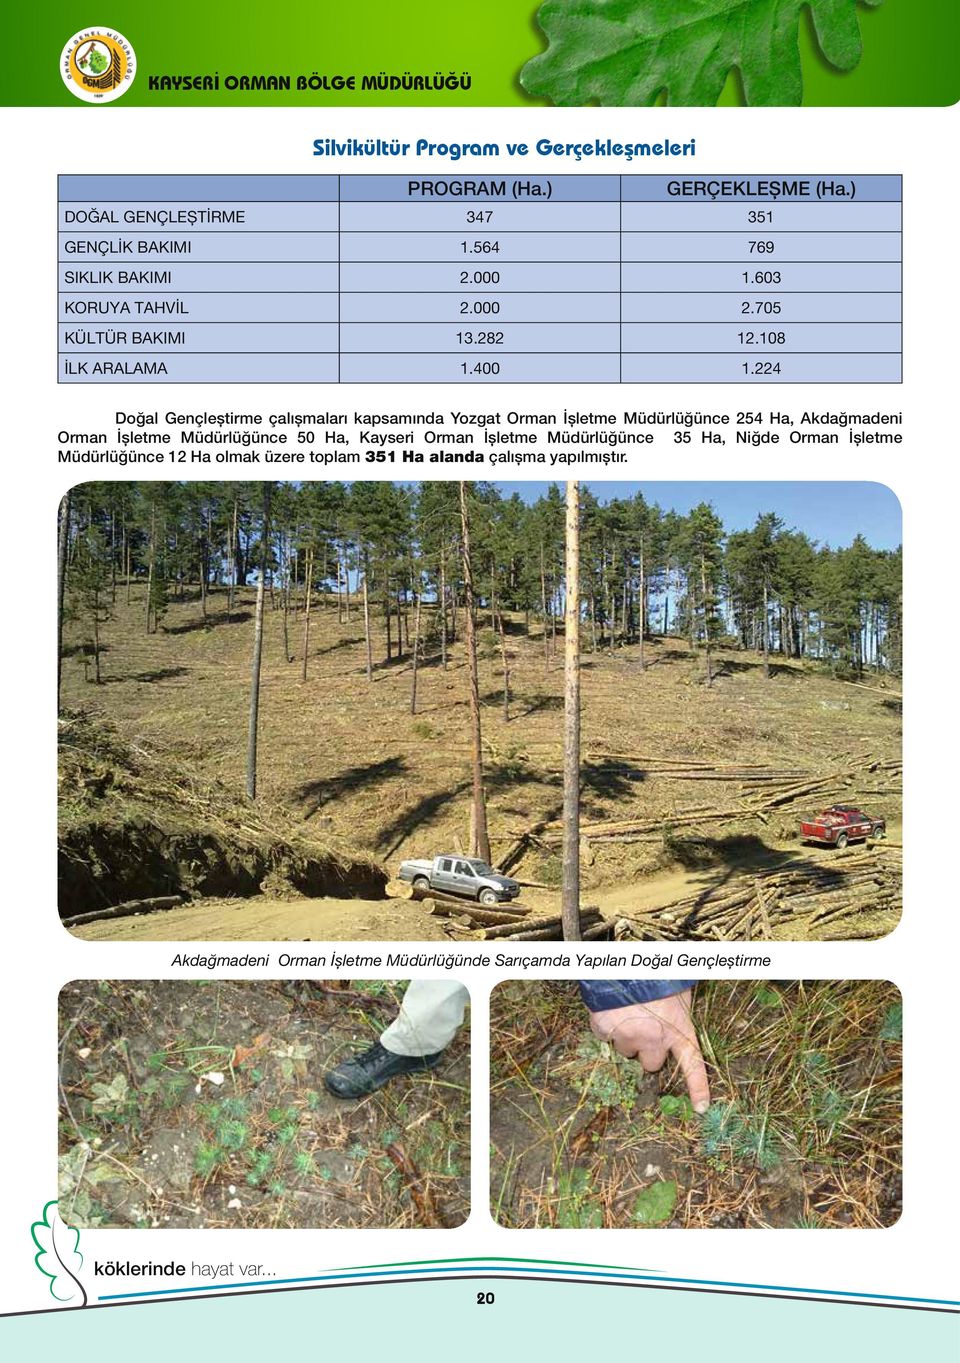 224 Doğal Gençleştirme çalışmaları kapsamında Yozgat Orman İşletme Müdürlüğünce 254 Ha, Akdağmadeni Orman İşletme Müdürlüğünce 50 Ha, Kayseri Orman